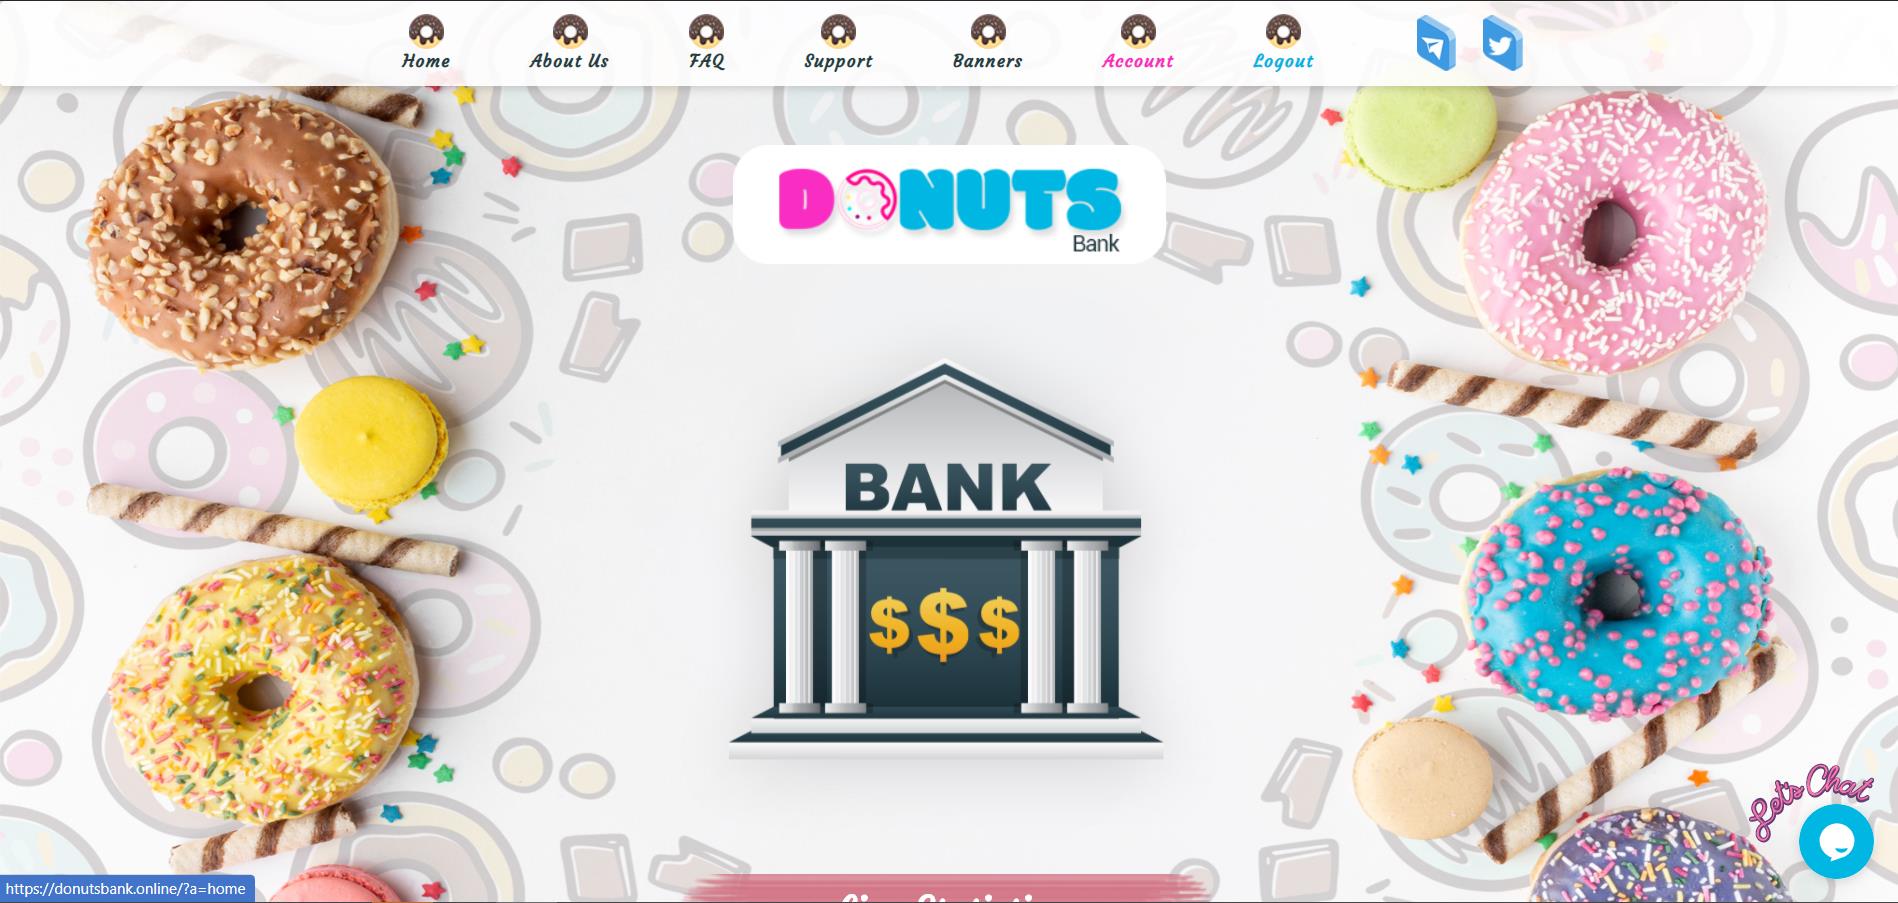 Donuts Bank